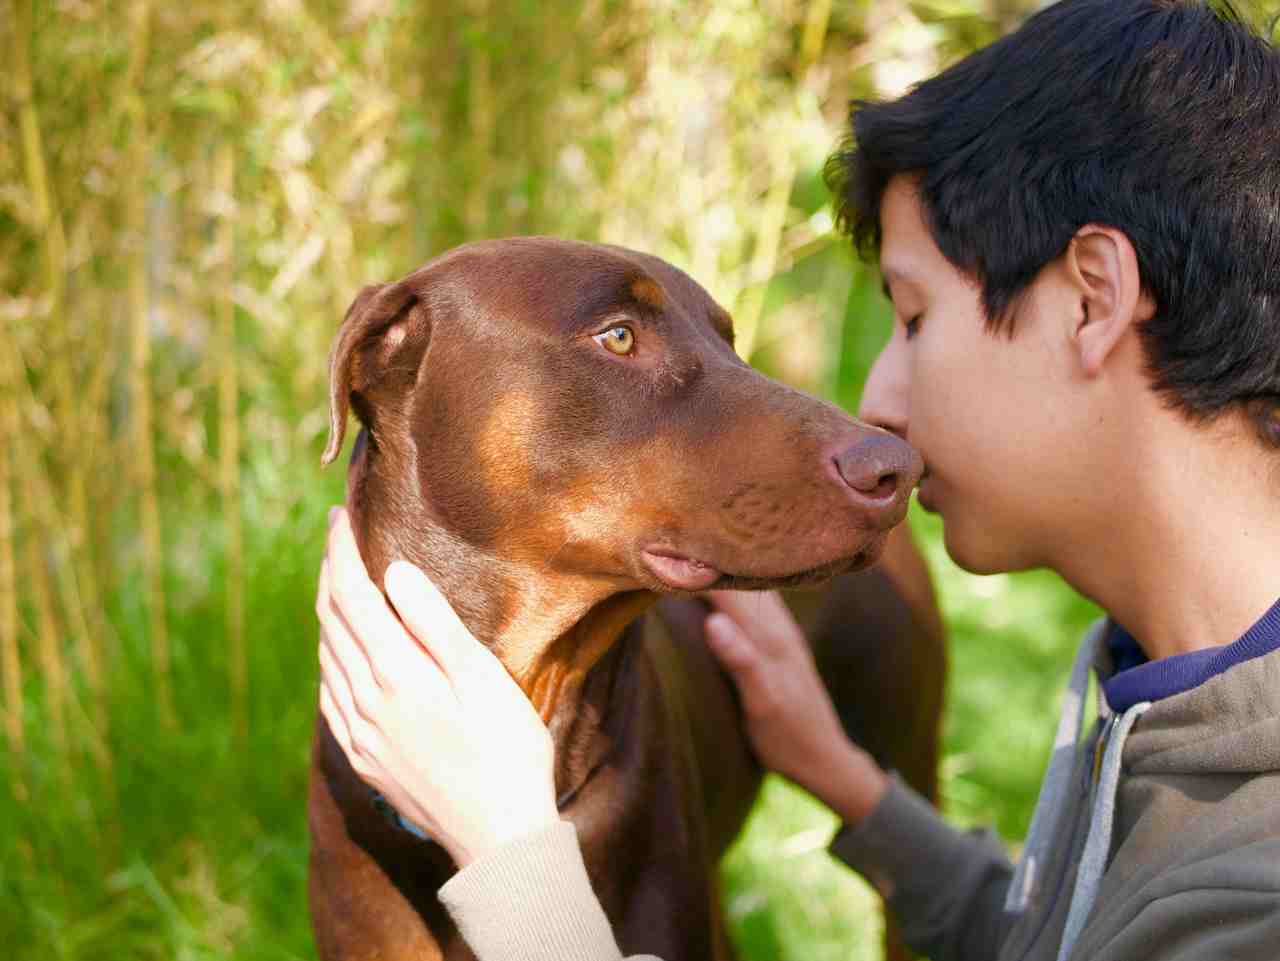 Novo estudo científico identifica o quanto os cães nos amam (Foto: Ryk Porras/Unsplash)